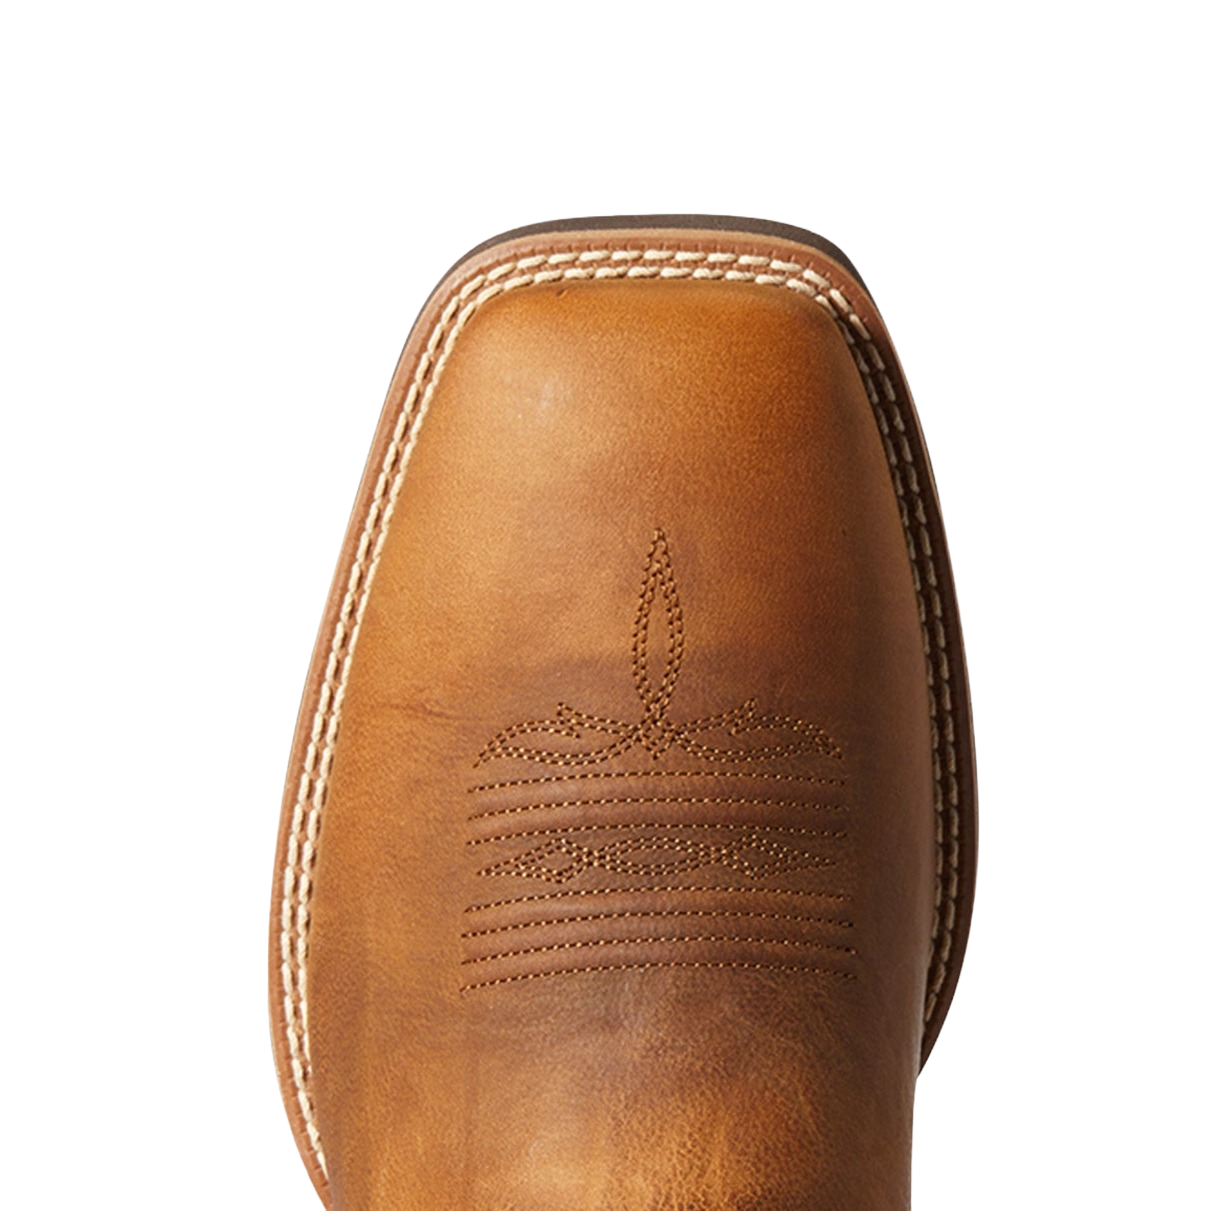 Ariat Men's Everlite Go Getter Brown & Rust Western Boots 10038369